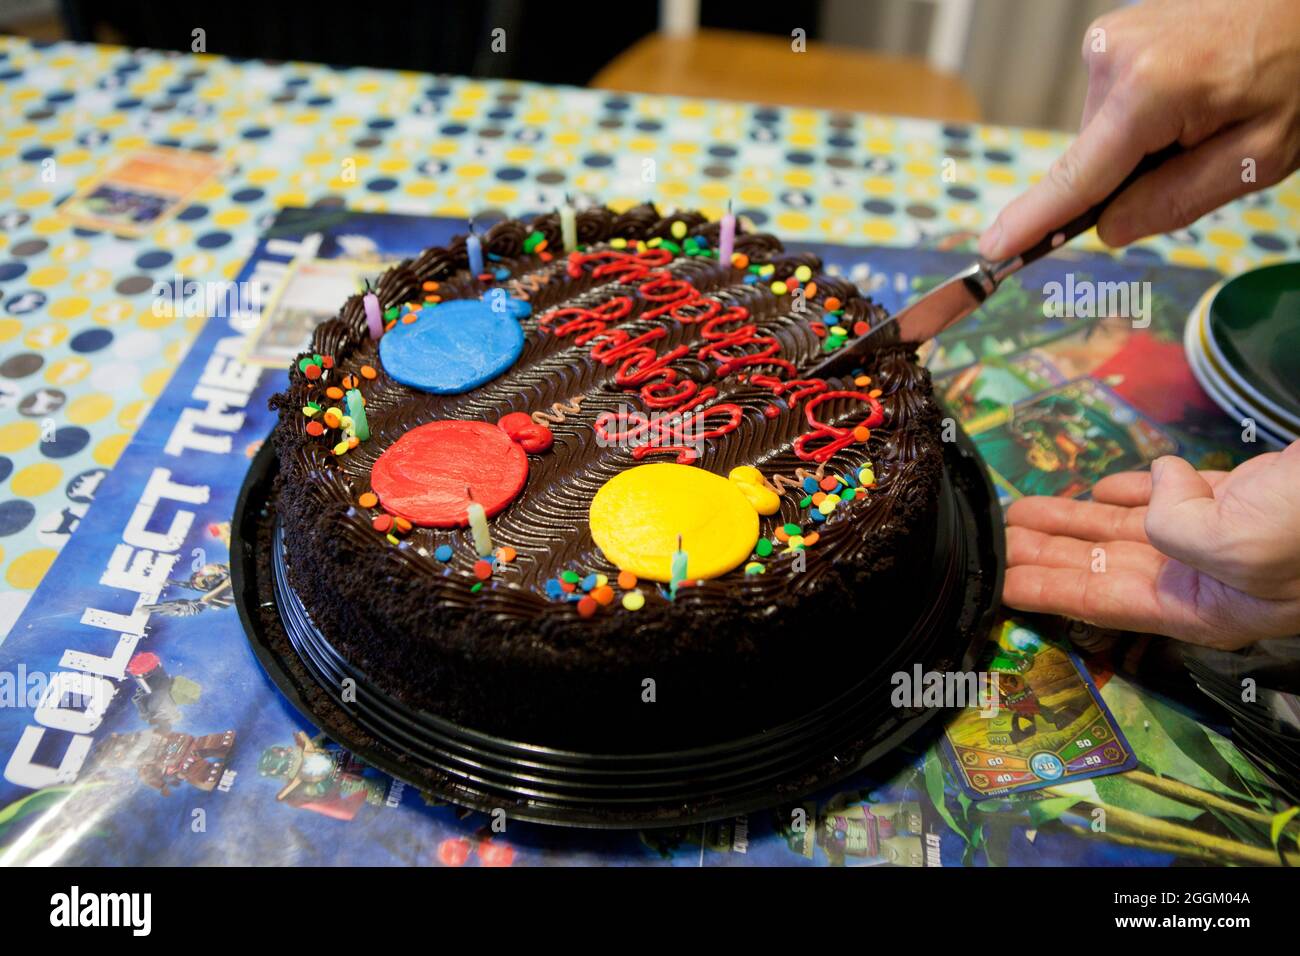 Homme coupant gâteau d'anniversaire au chocolat, gros plan - USA Banque D'Images